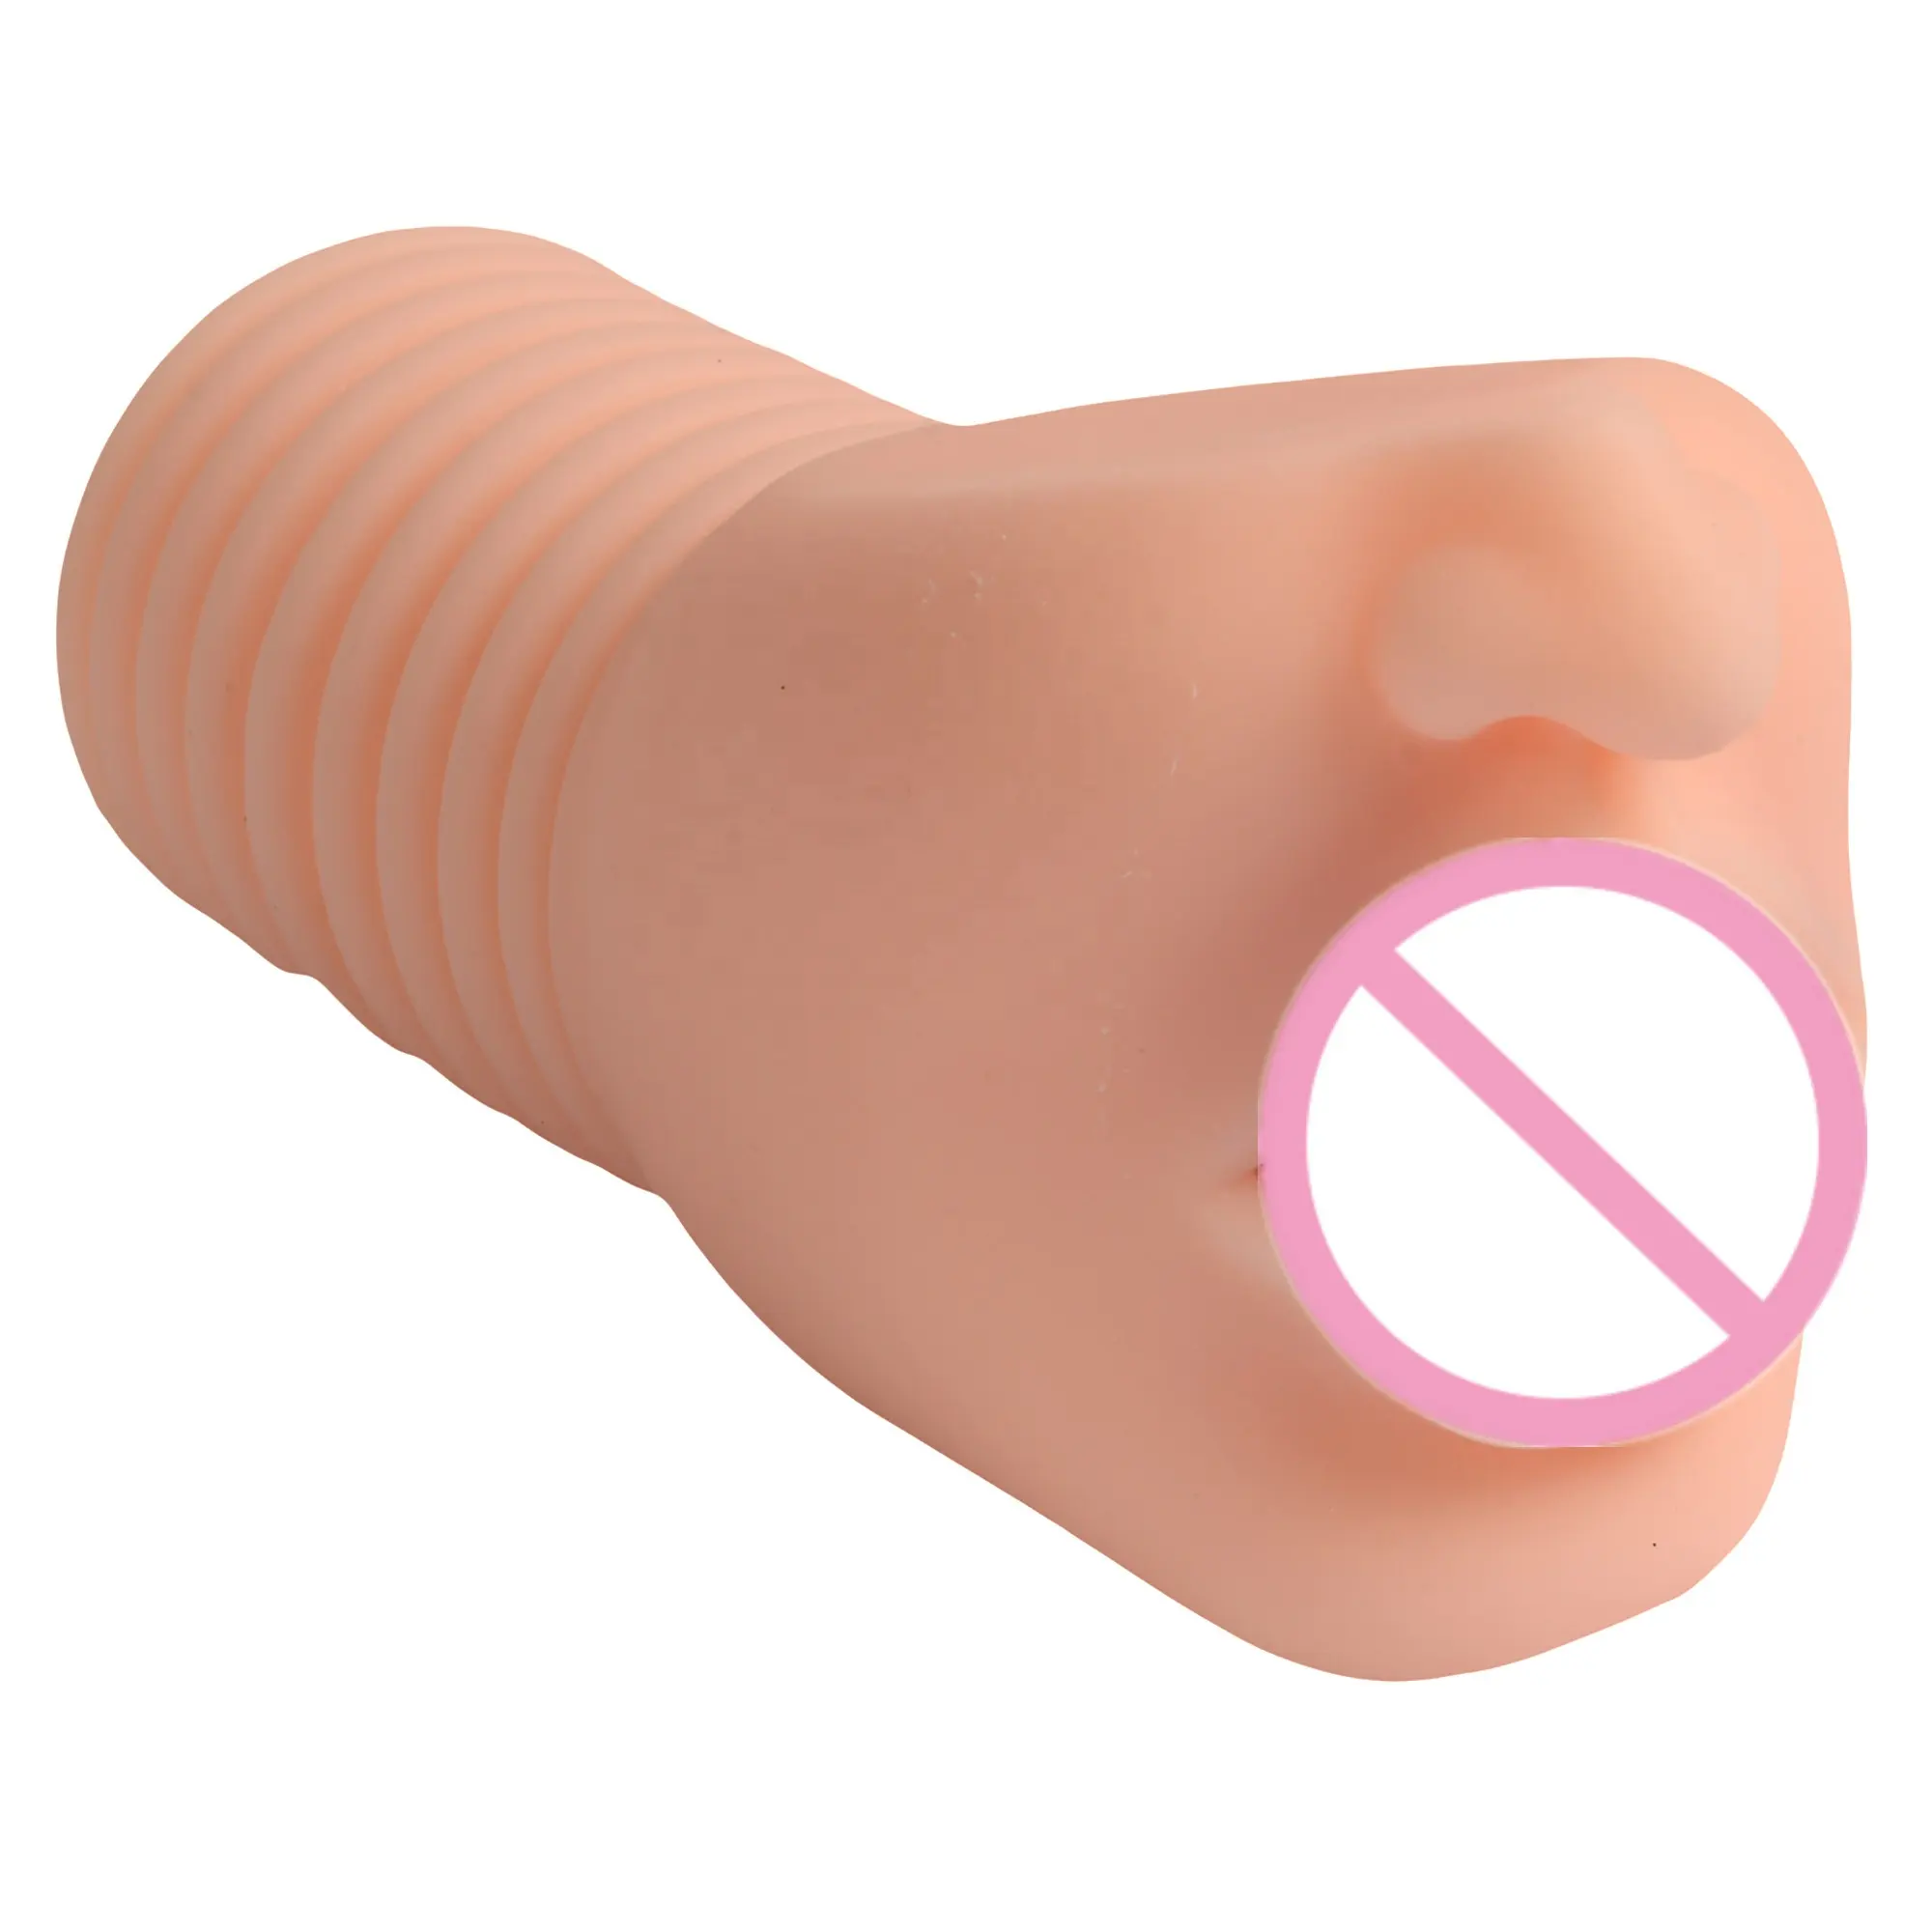 Giocattoli del sesso per adulti di alta qualità pelle realistica masturbazione vaginale figa sesso tasca figa prodotti del sesso tazza masturbatore maschile